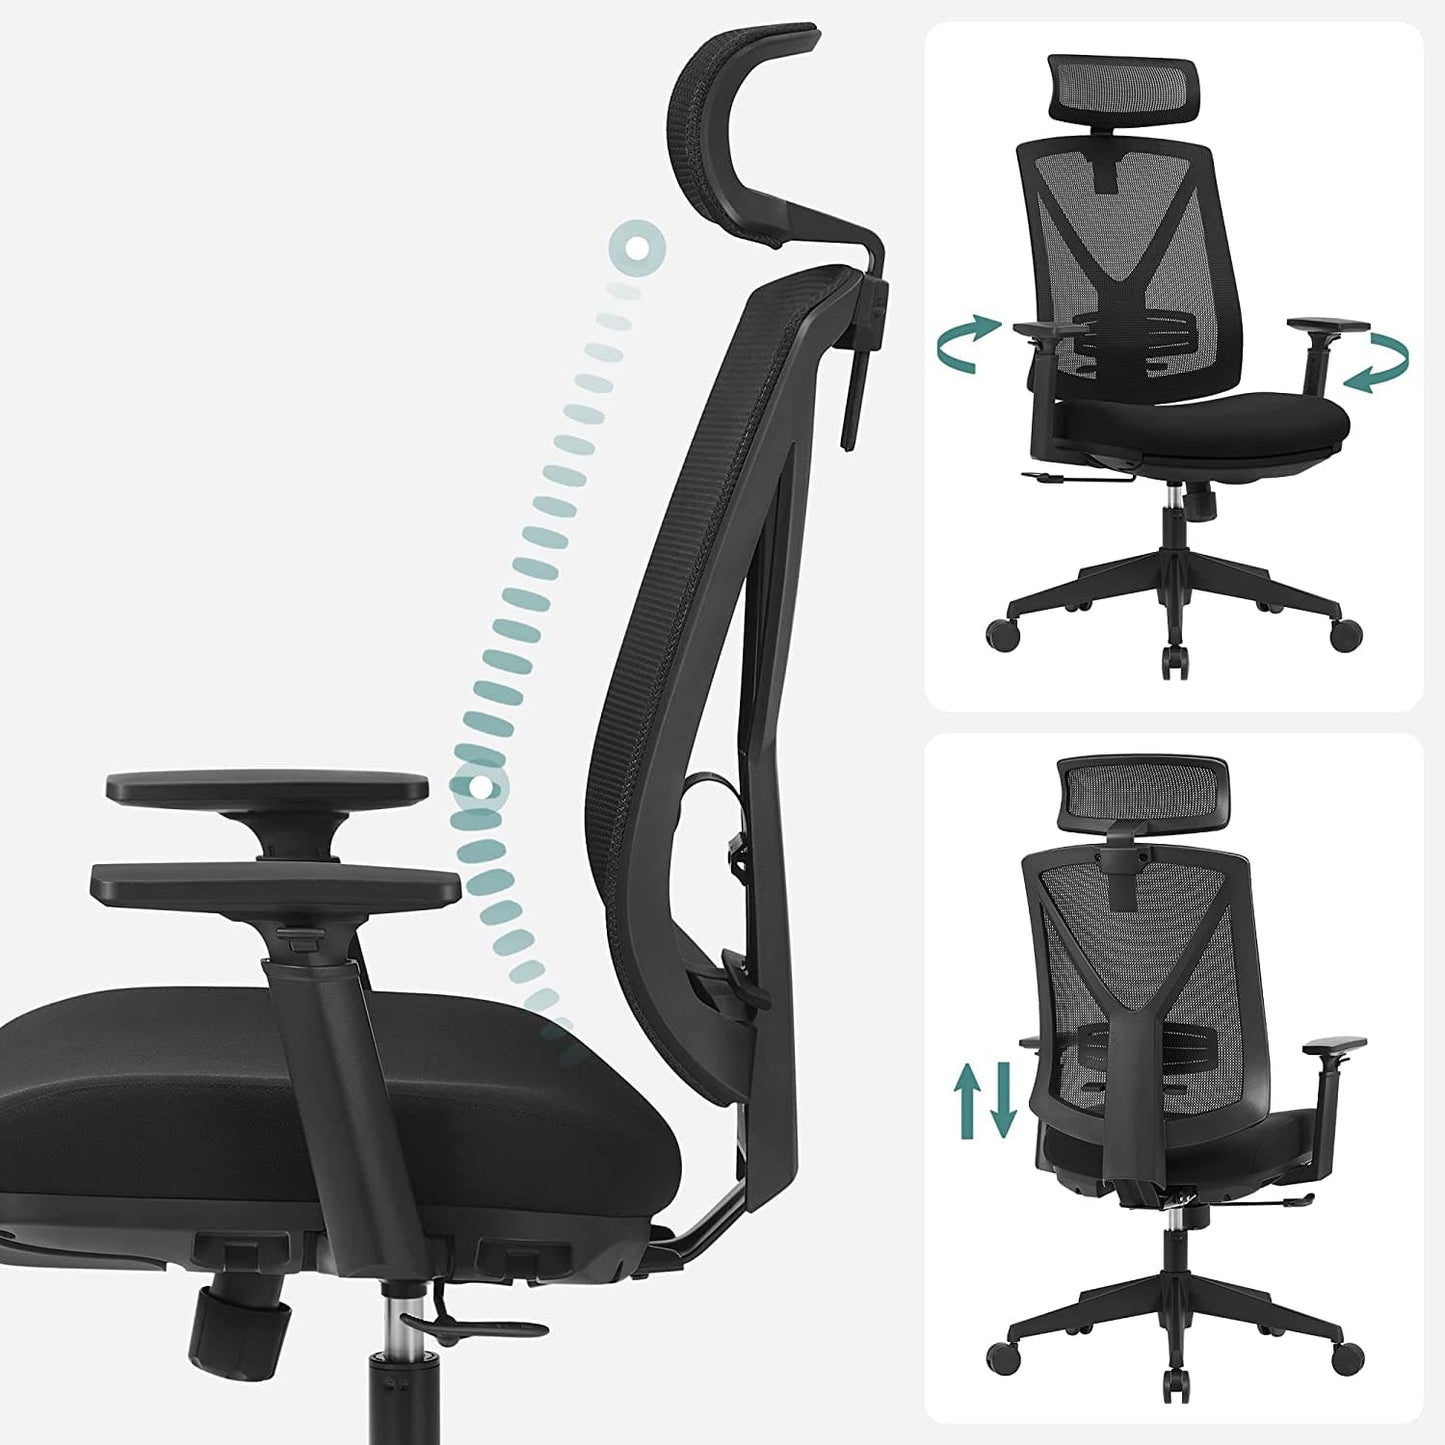 Einen ergonomischen Bürostuhl mit Netzbespannung, der zusätzlichen Komfort für Ihren Kopf, Nacken, Rücken sowie Ihre Arme bietet und gleichzeitig Ihrer Produktivität einen neuen Schub verleiht